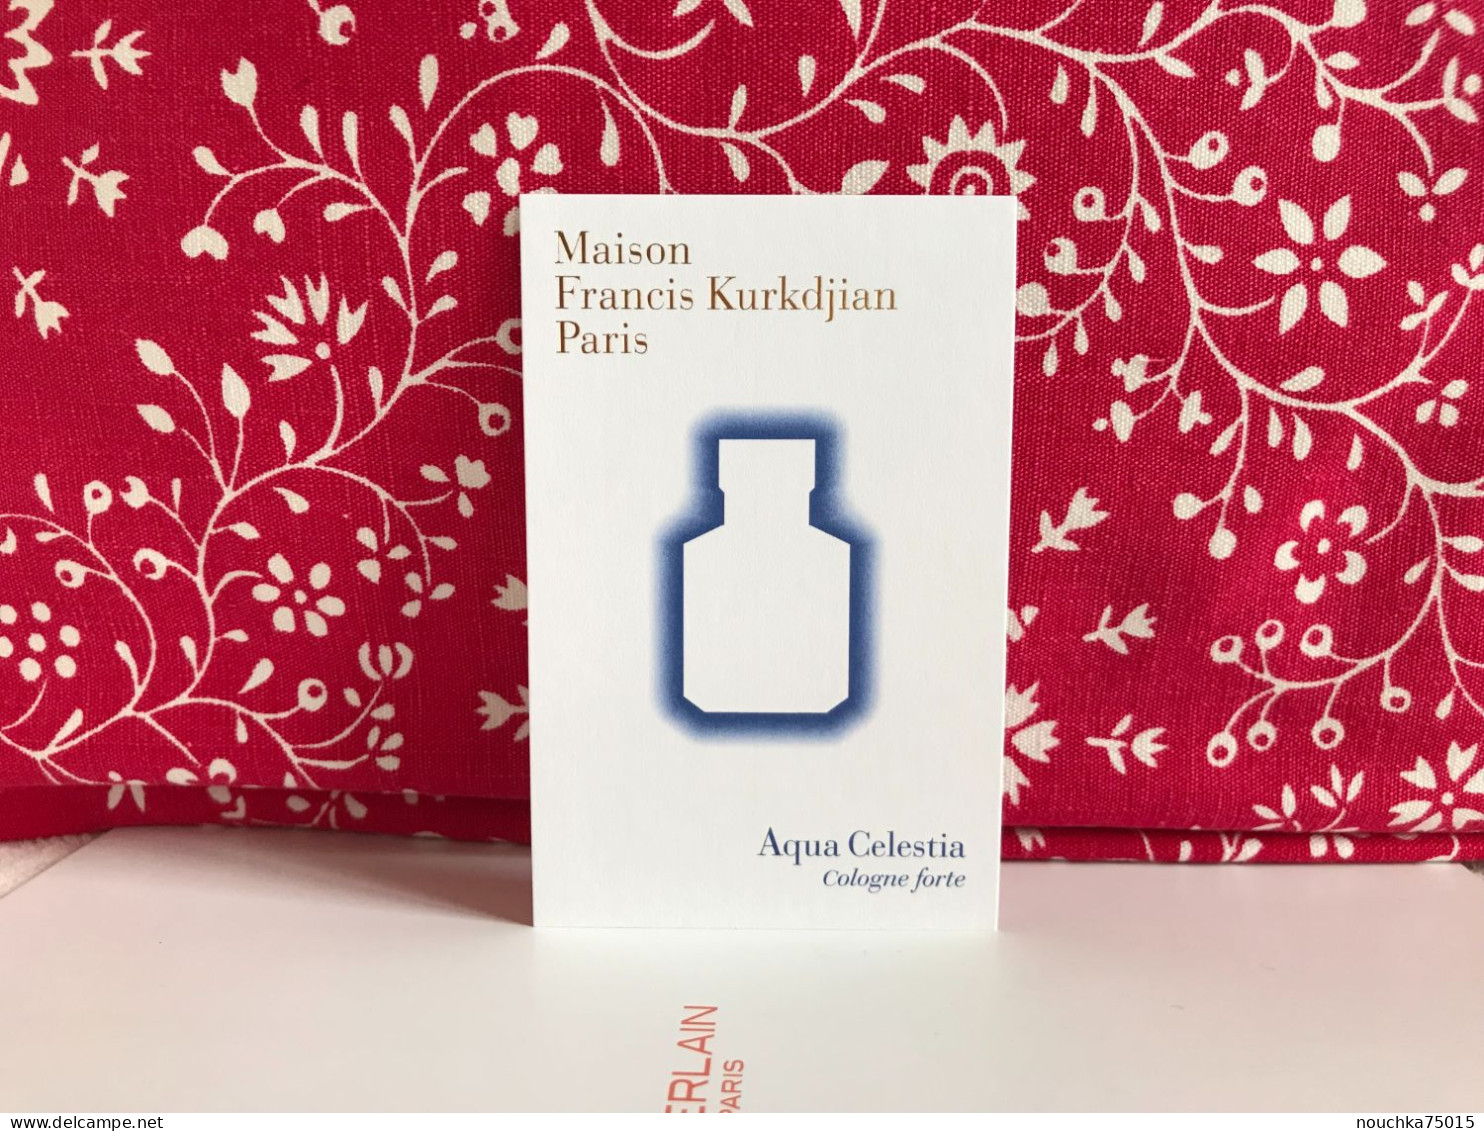 Maison Francis Kurkdjian - Aqua Celestia, Cologne Forte - Modern (from 1961)